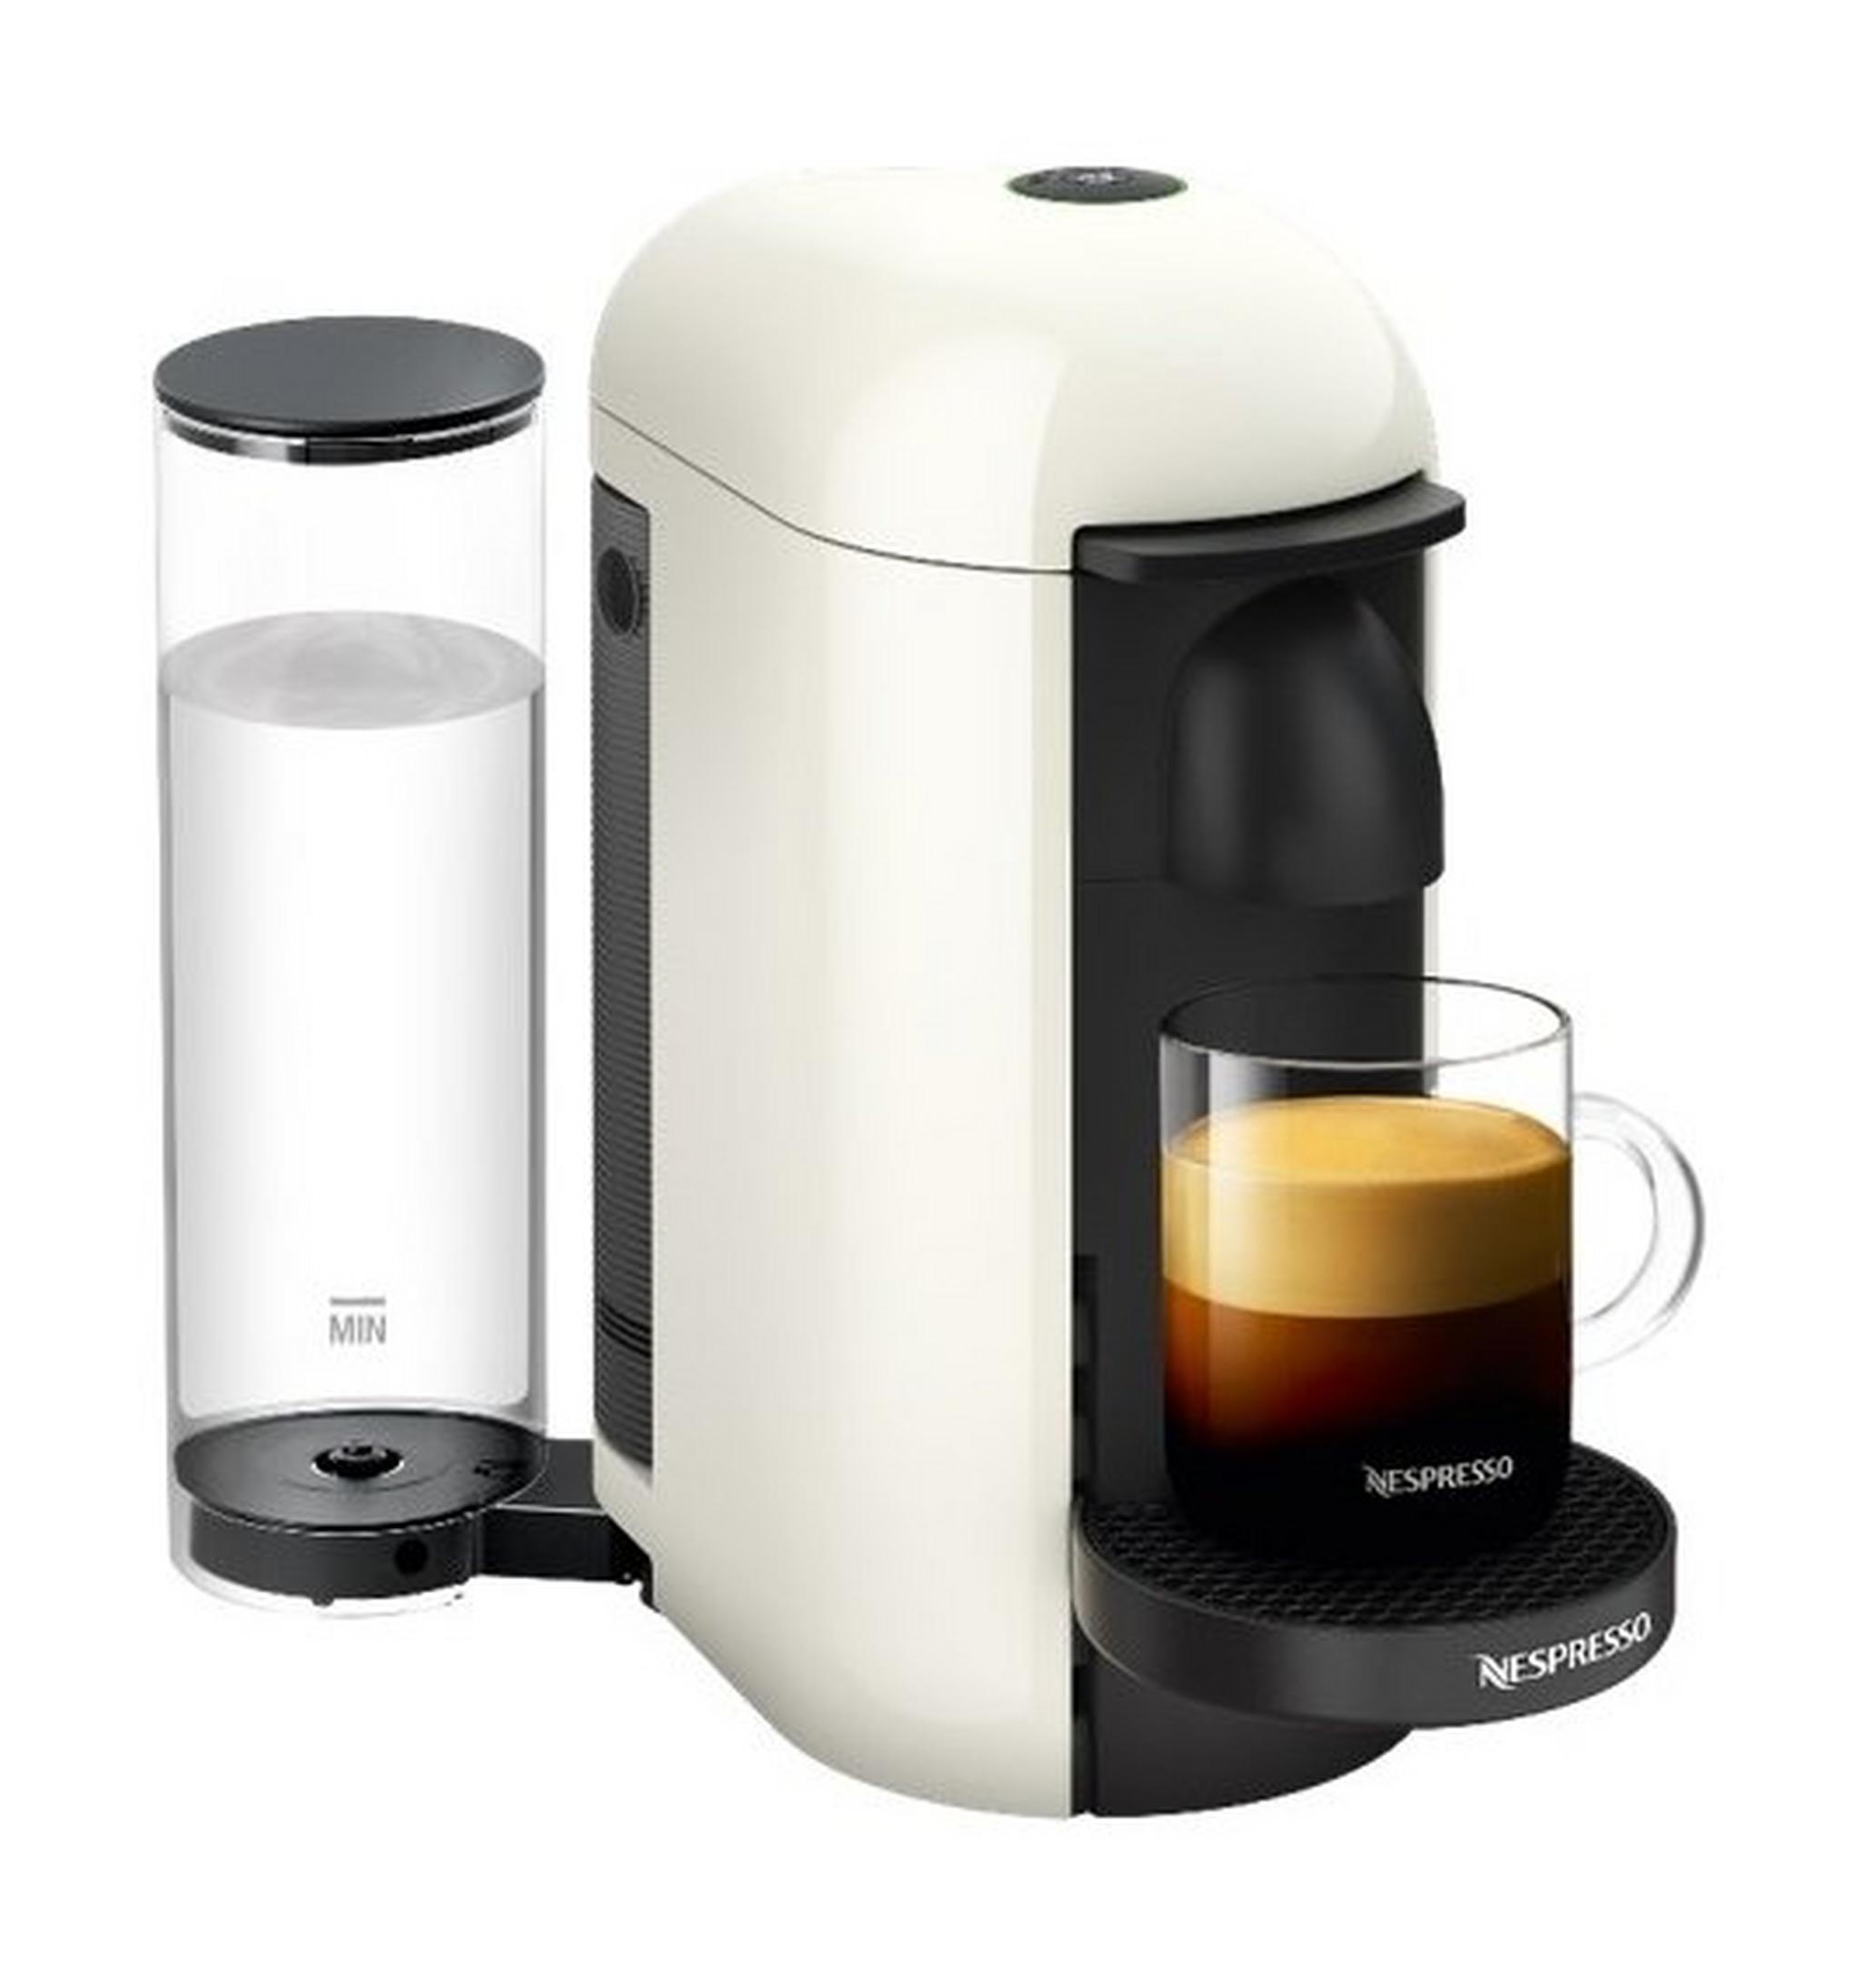 ماكينة صنع القهوة والإسبريسو فيرتو لاين مع خافق الحليب ايروتشينو بلس من من نسبريسو، قدرة 1300 وات، سعة 1.1 لتر، VLB-GCB2-GB-WH-NE1 NE – أبيض